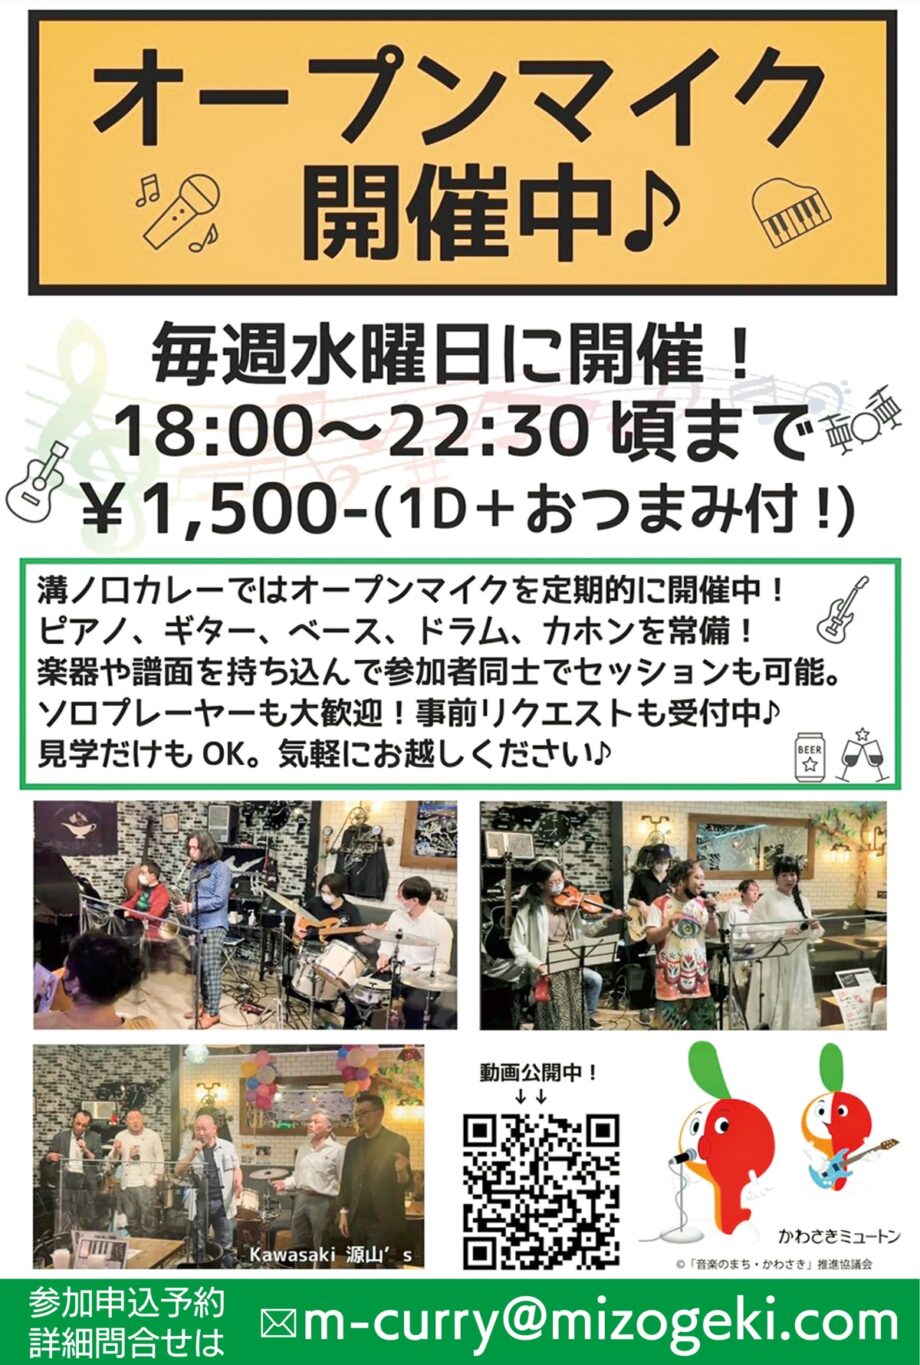 川崎市高津区「溝ノ口カレー」で水曜日の恒例イベント「オープンマイク」自由に演奏を楽しめます！